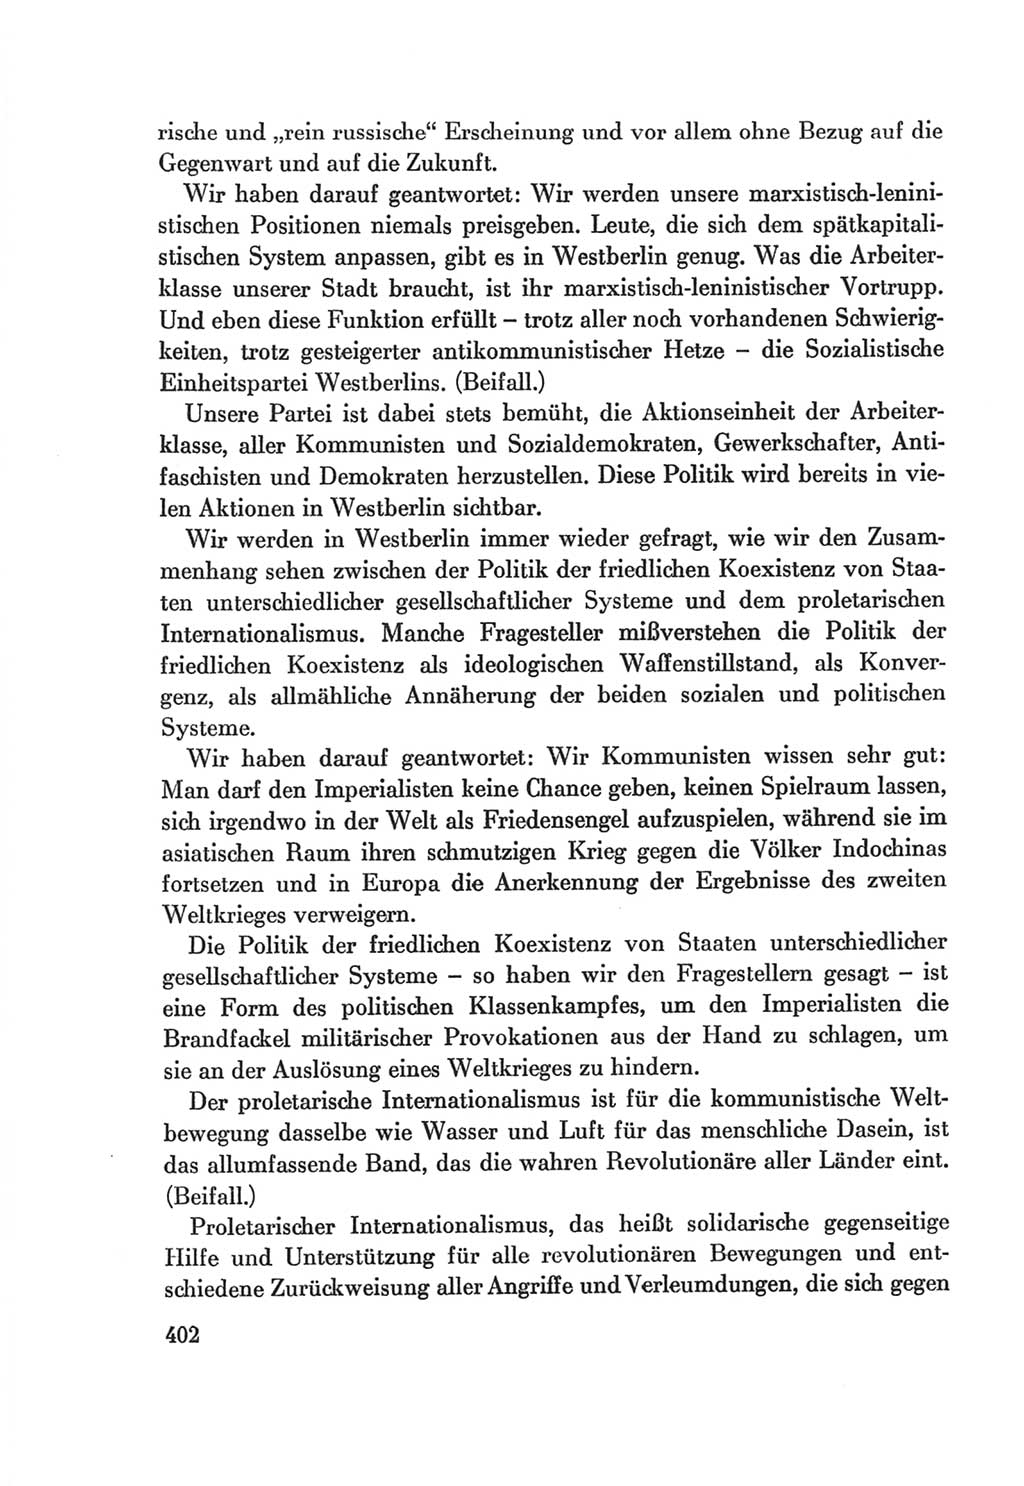 Protokoll der Verhandlungen des Ⅷ. Parteitages der Sozialistischen Einheitspartei Deutschlands (SED) [Deutsche Demokratische Republik (DDR)] 1971, Band 1, Seite 402 (Prot. Verh. Ⅷ. PT SED DDR 1971, Bd. 1, S. 402)